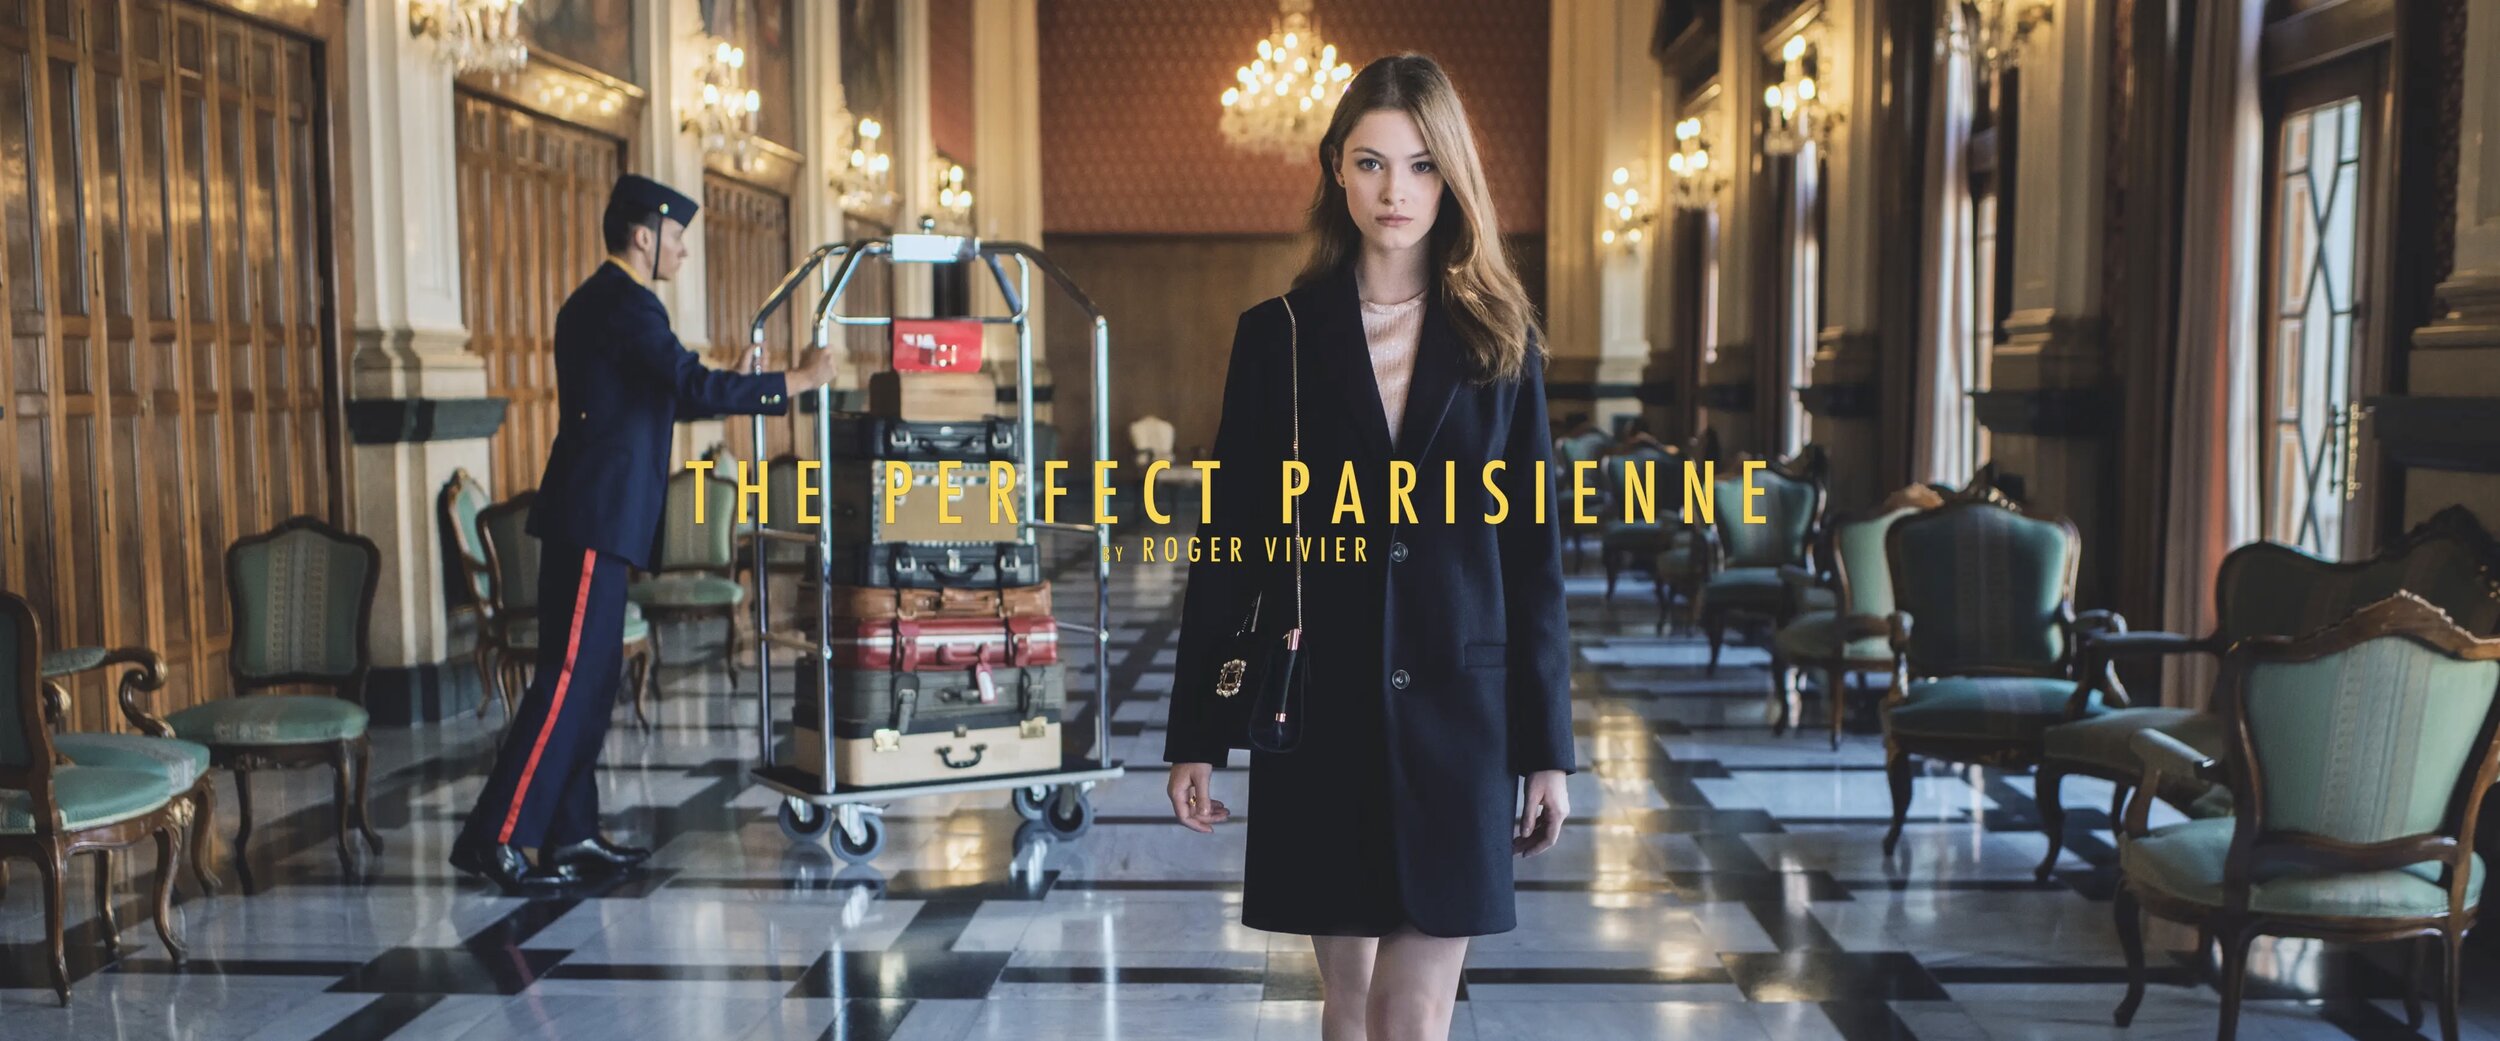 The Perfect Parisienne - Roger Vivier